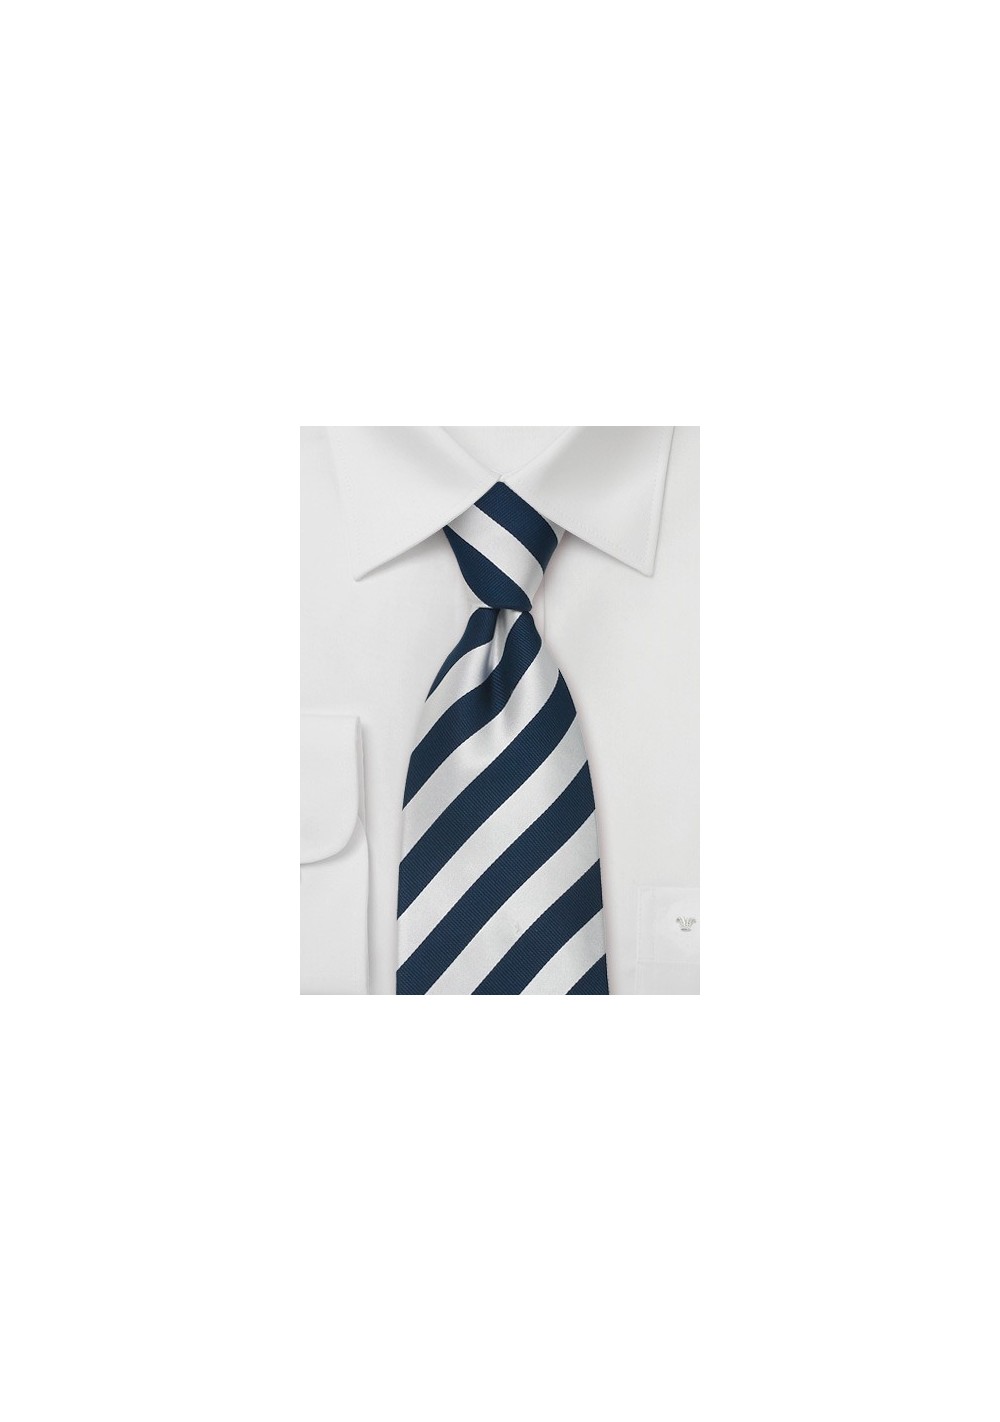 Striped Silk Ties - Blue & Silver striped necktie